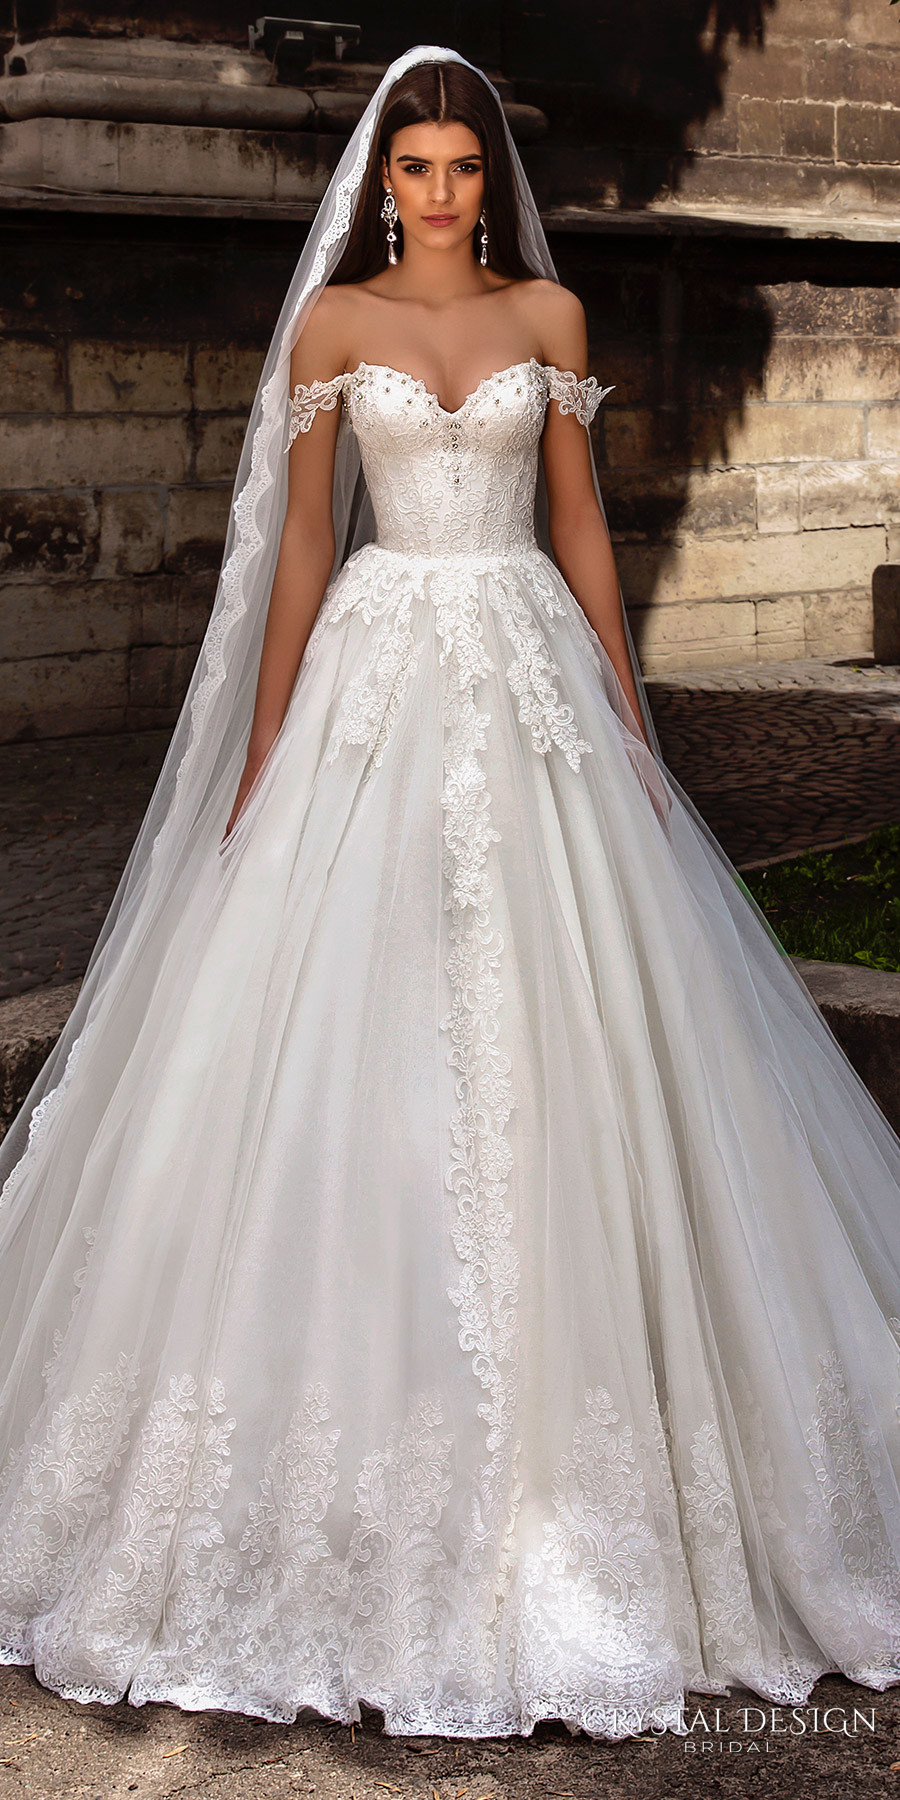 Crystal Wedding Gowns
 Trubridal Wedding Blog